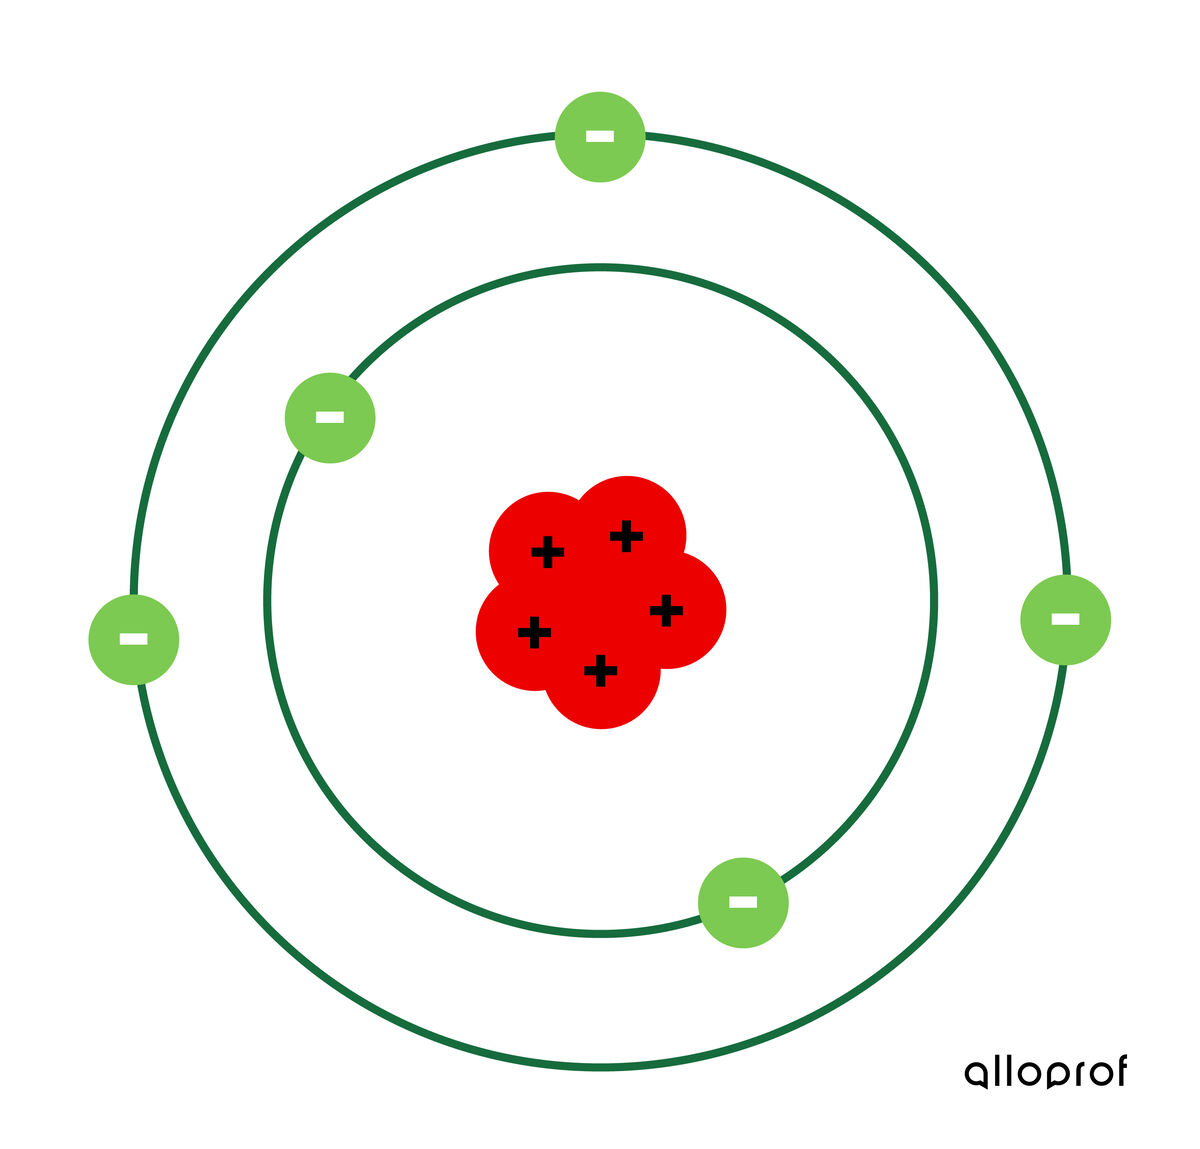 bohr model of the atom